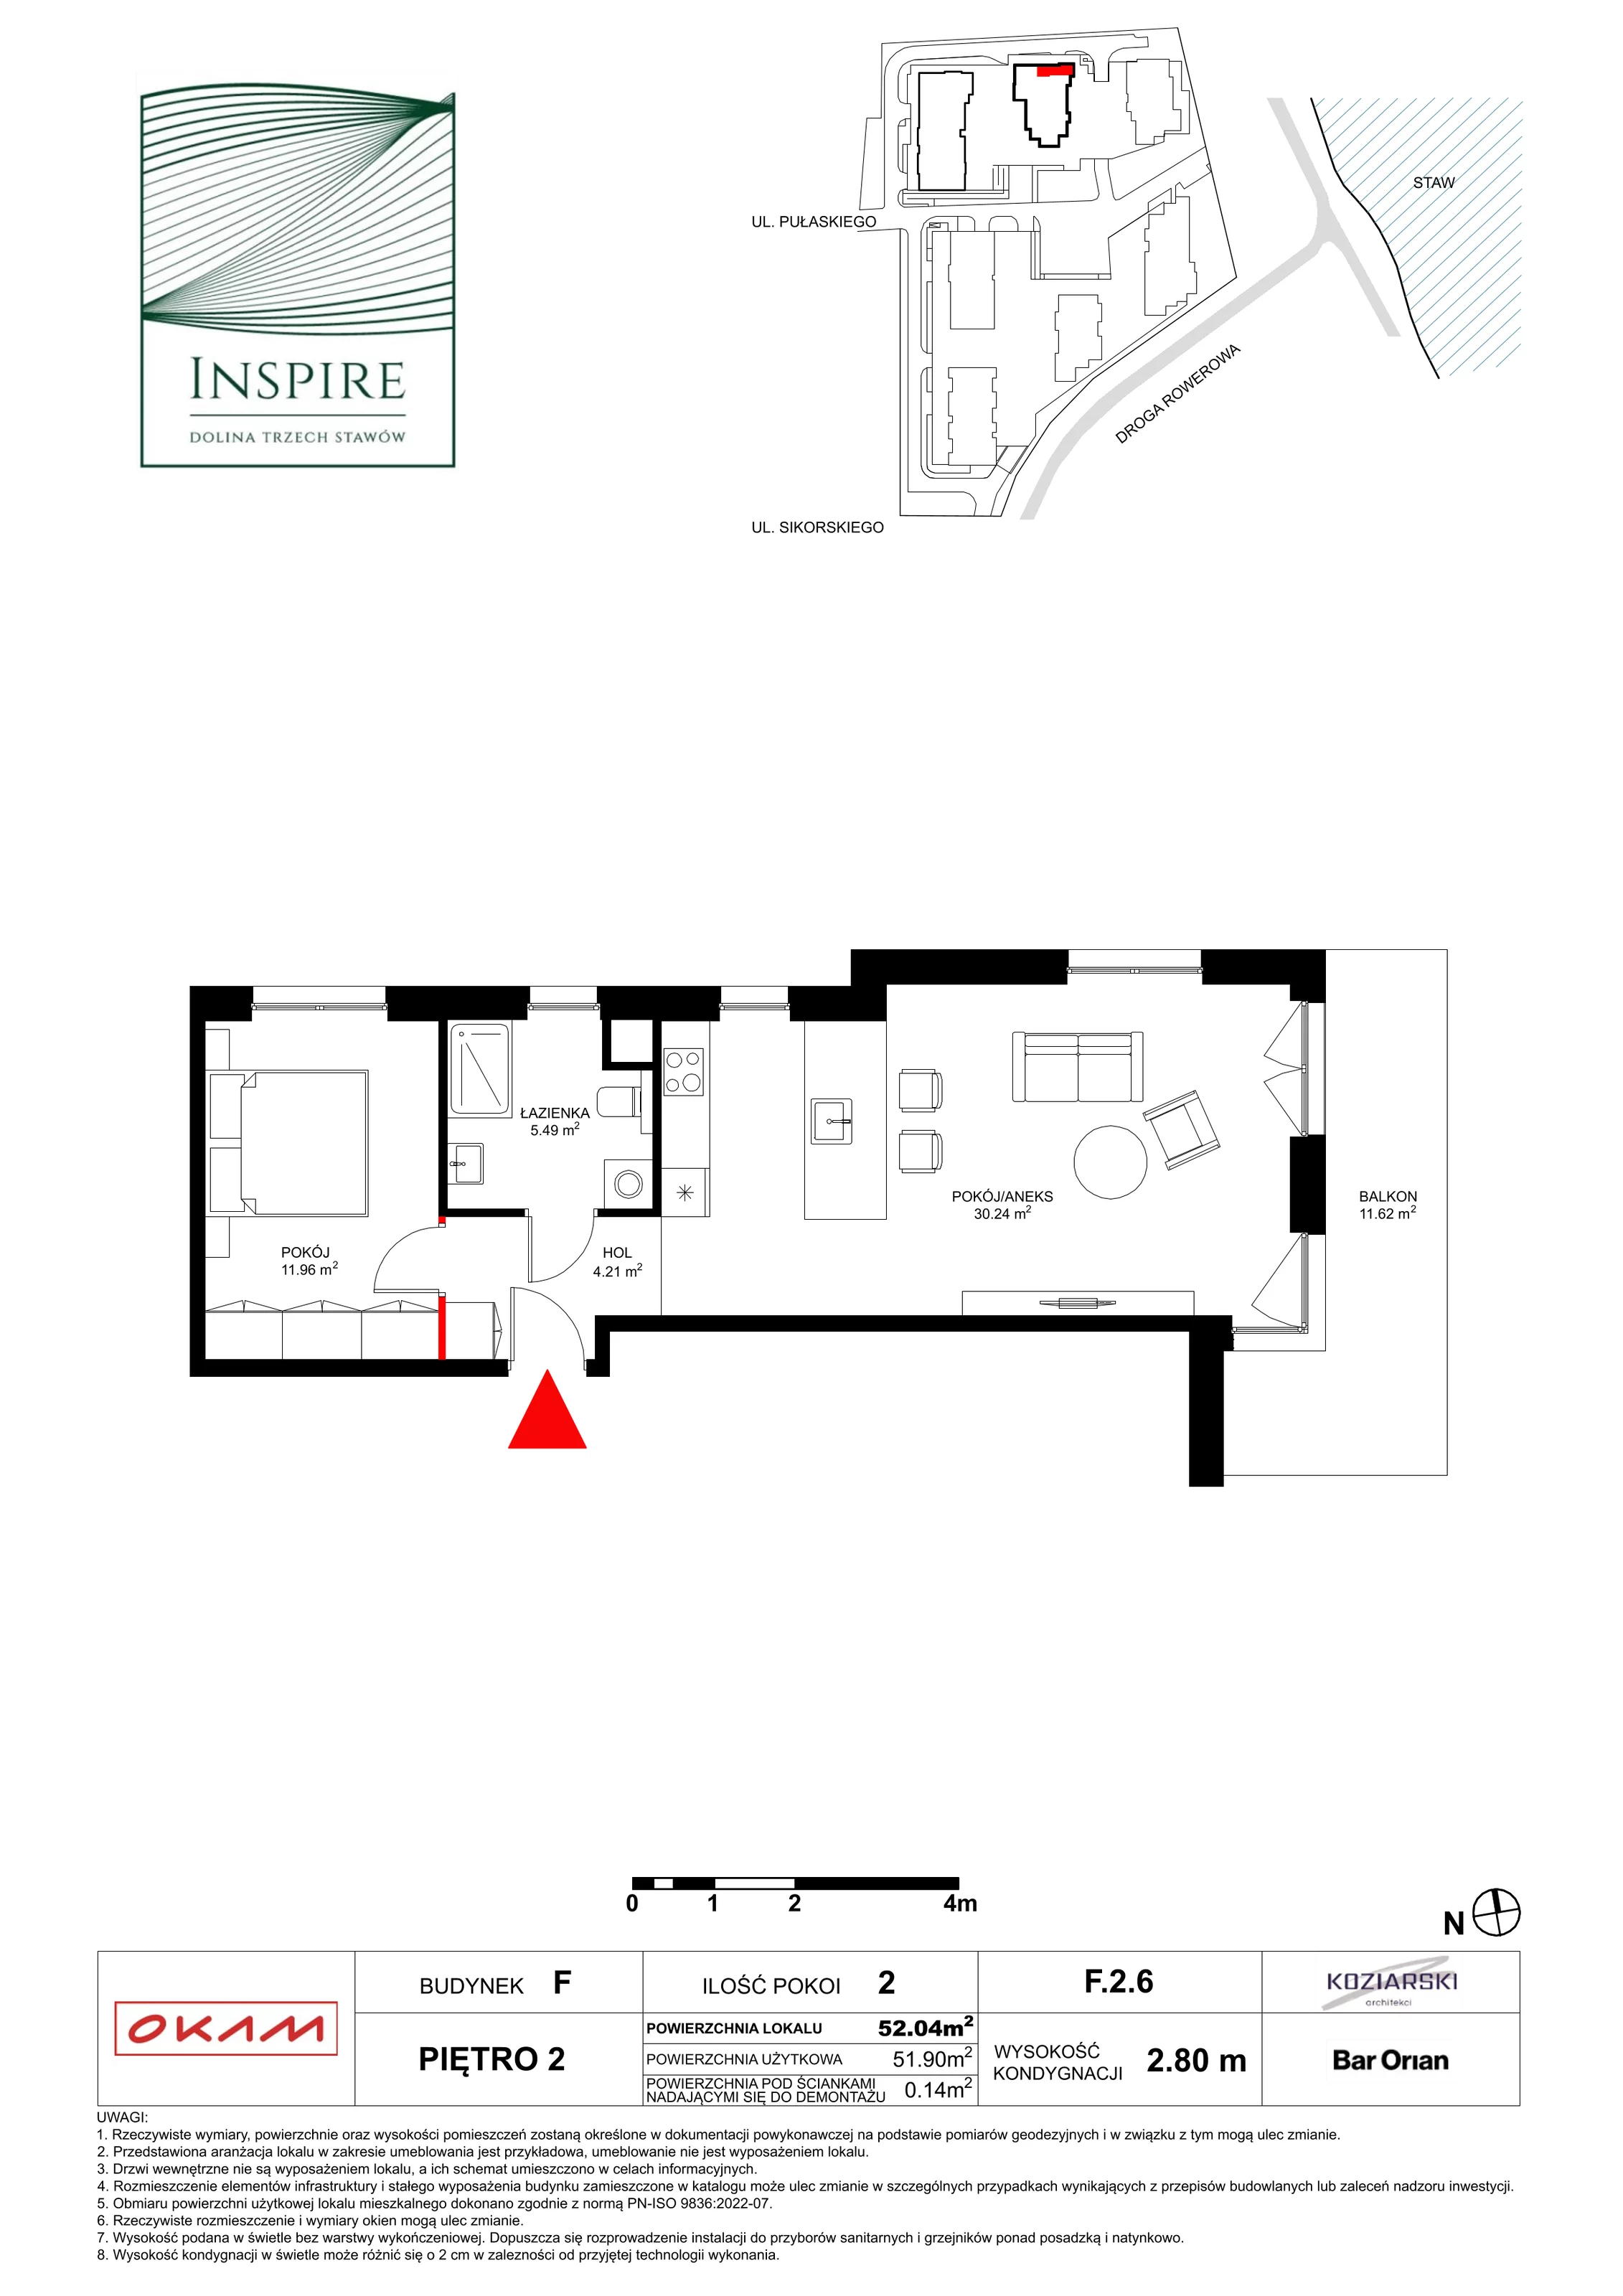 Apartament 51,40 m², piętro 2, oferta nr F.2.6, Inspire, Katowice, Osiedle Paderewskiego-Muchowiec, Dolina Trzech Stawów, ul. gen. Sikorskiego 41